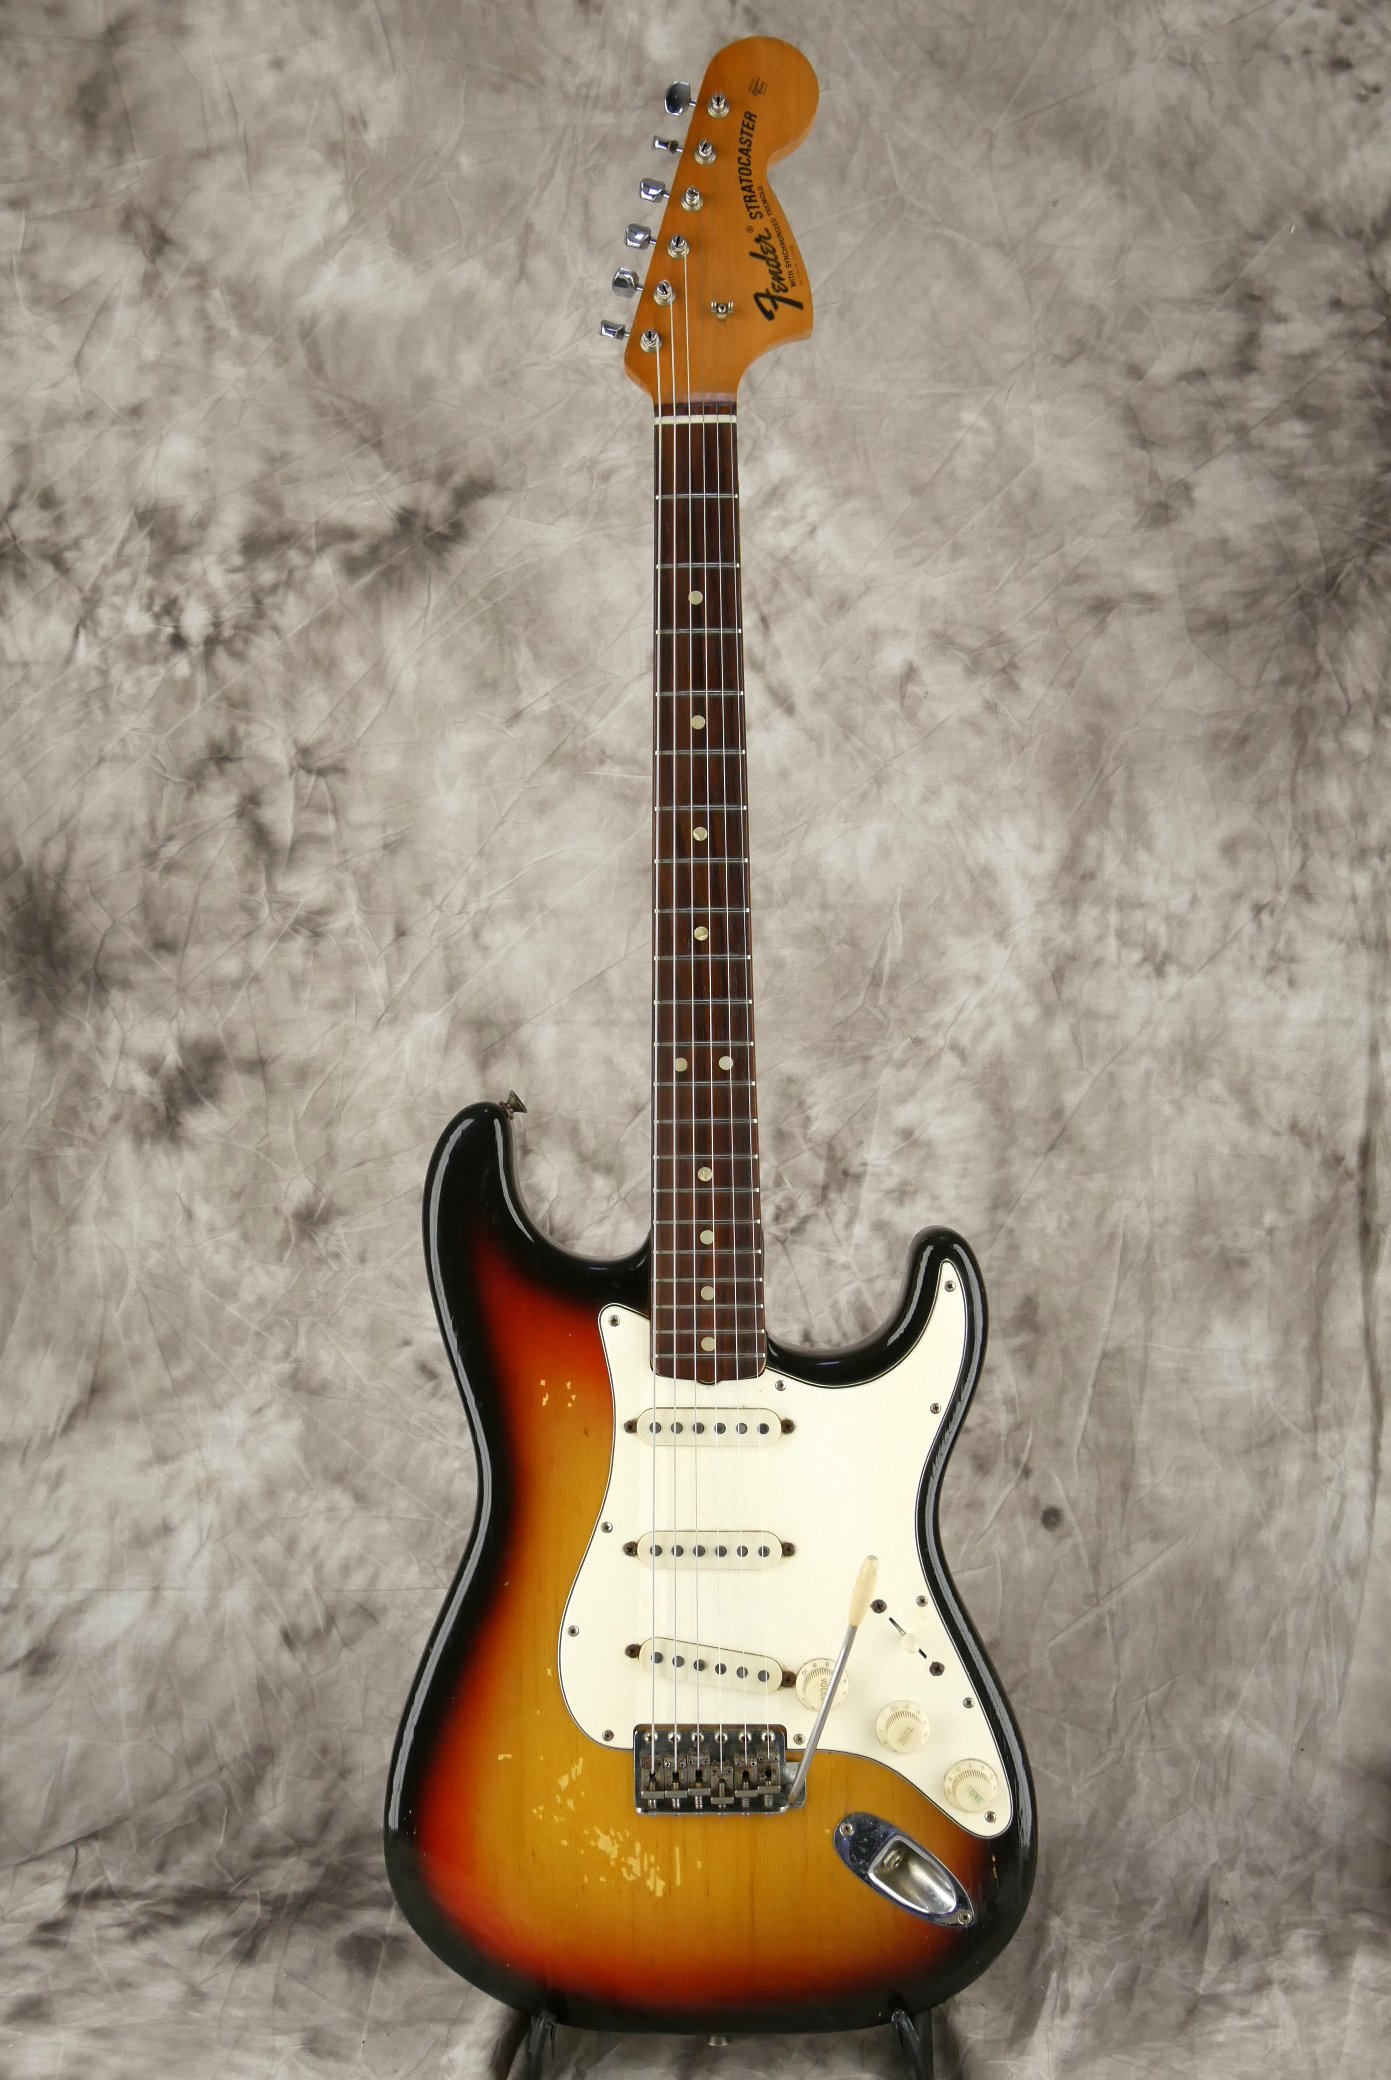 Fender_Stratocaster-1970_sunburst-tremolo-001.JPG